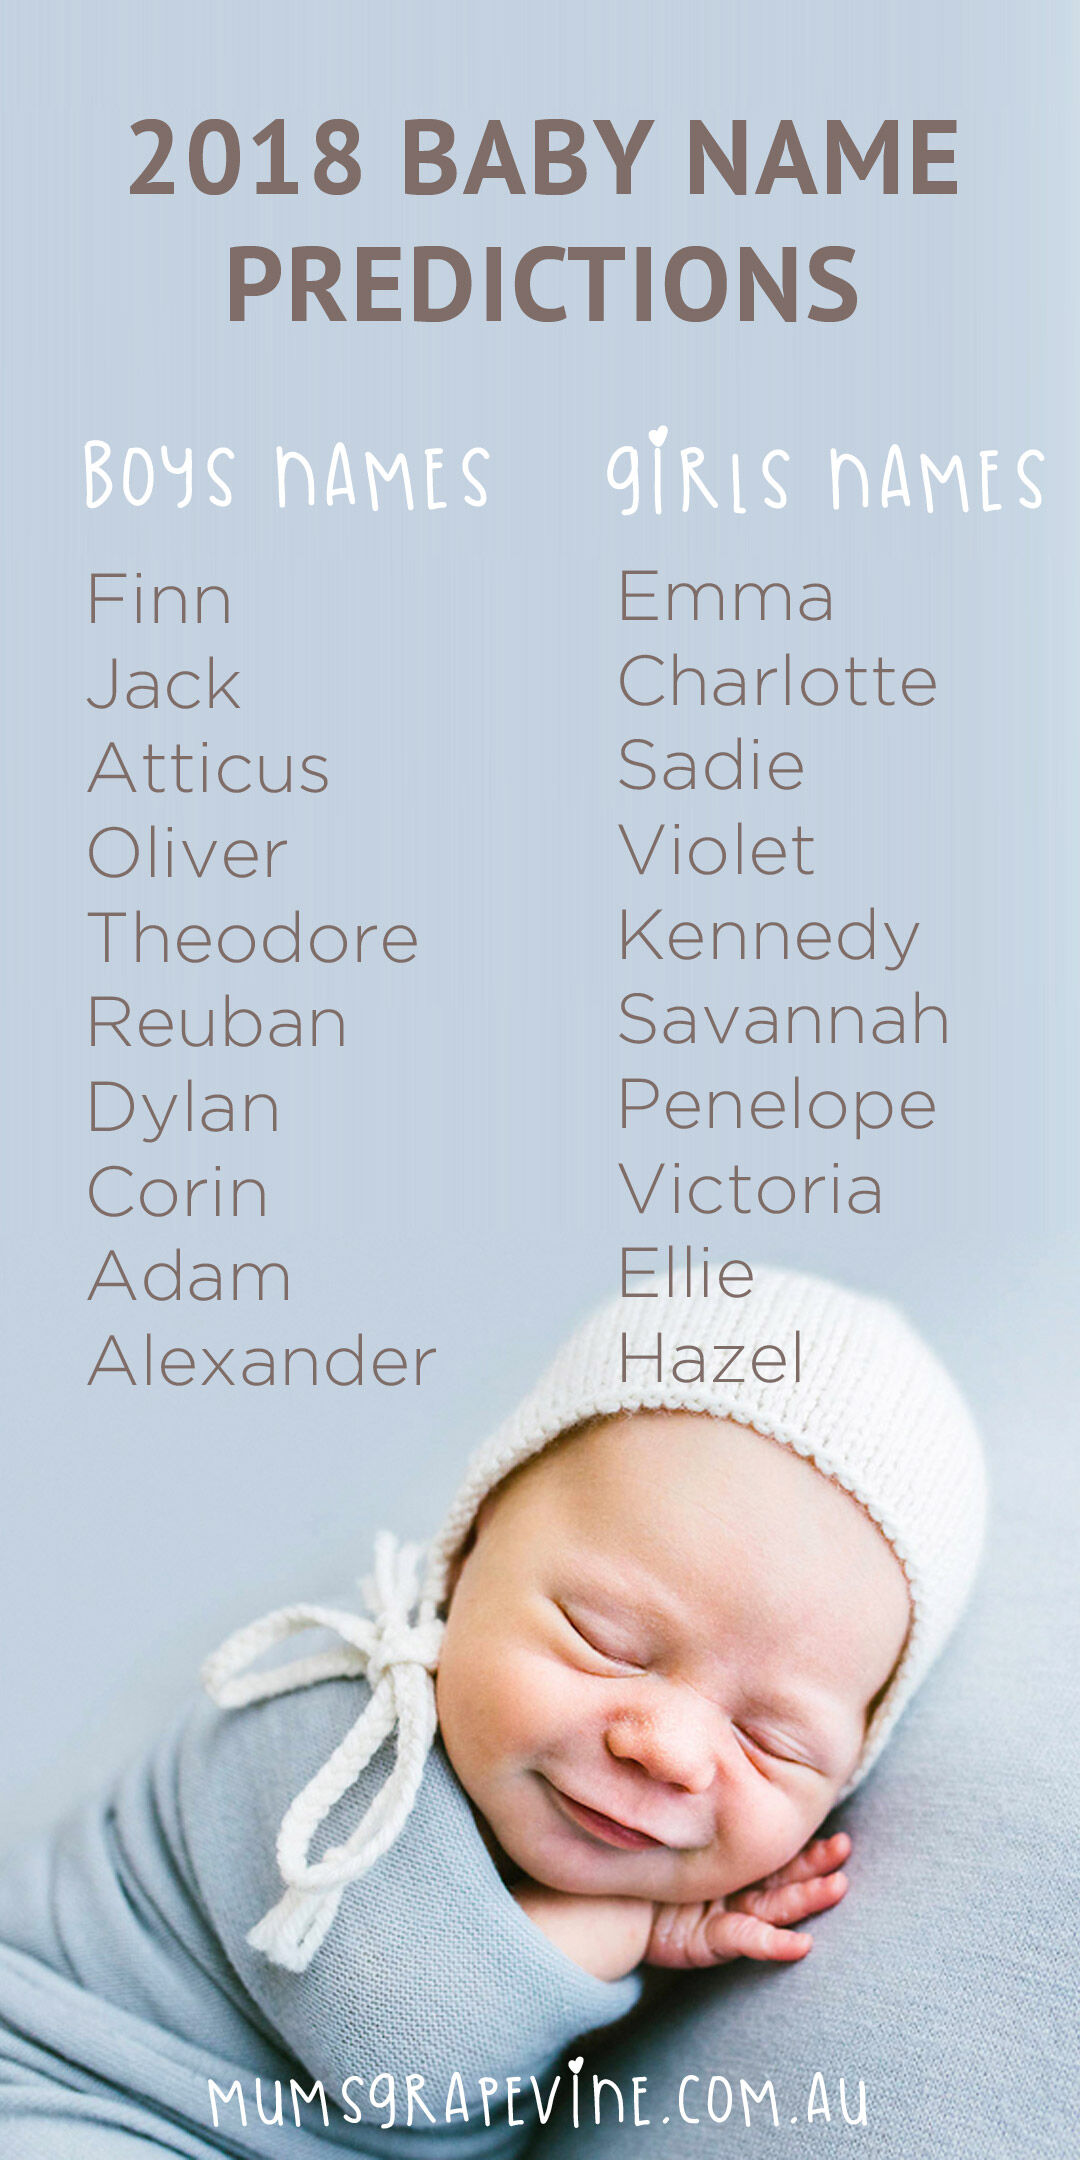 Pin 2018 Baby Name Predictions